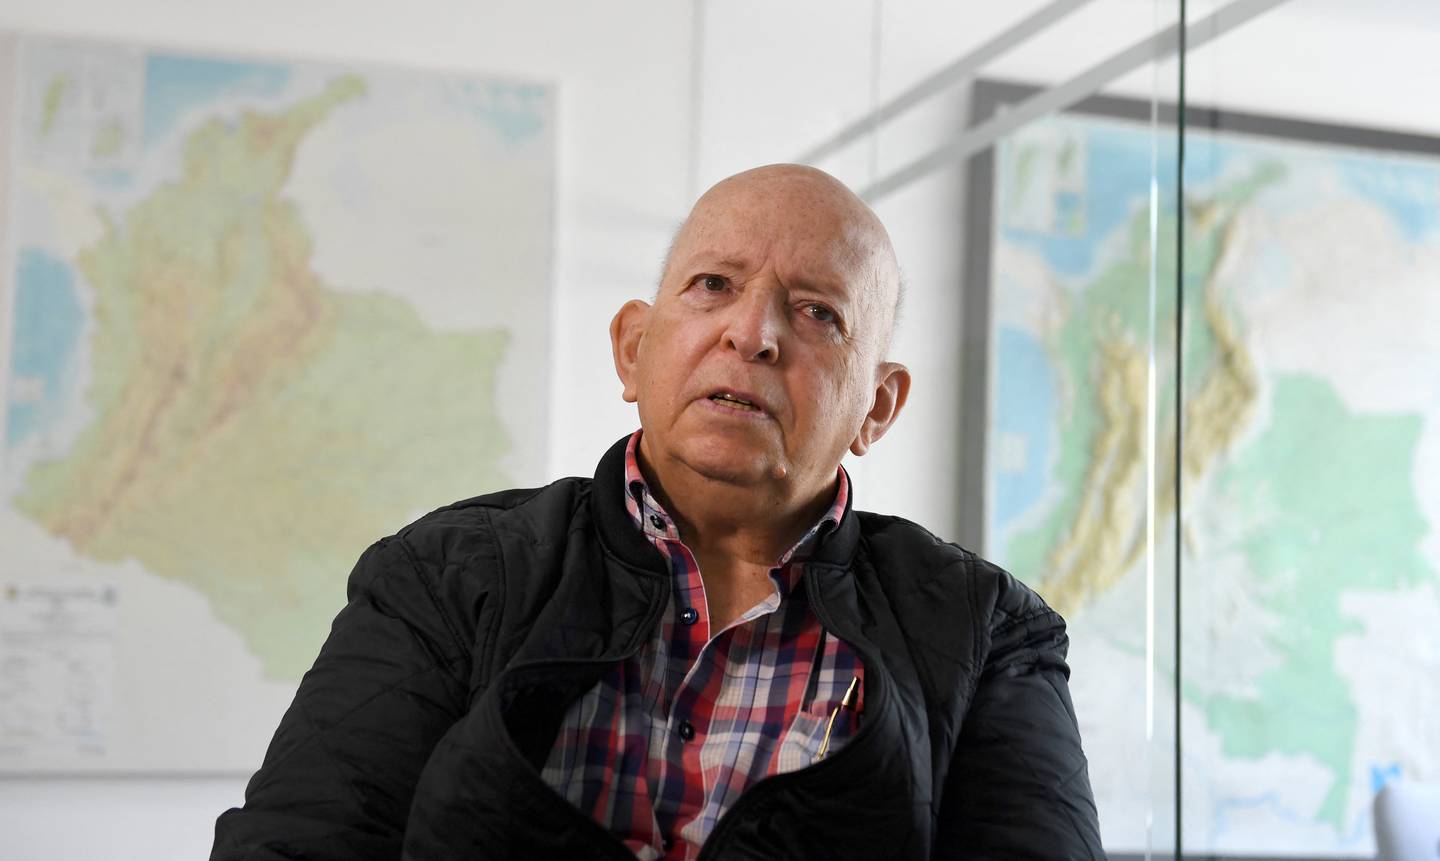 El exguerrillero del M-19 Otty Patiño, jefe negociador del Gobierno de Colombia en los diálogos de paz con el grupo guerrillero Ejército de Liberación Nacional (ELN)